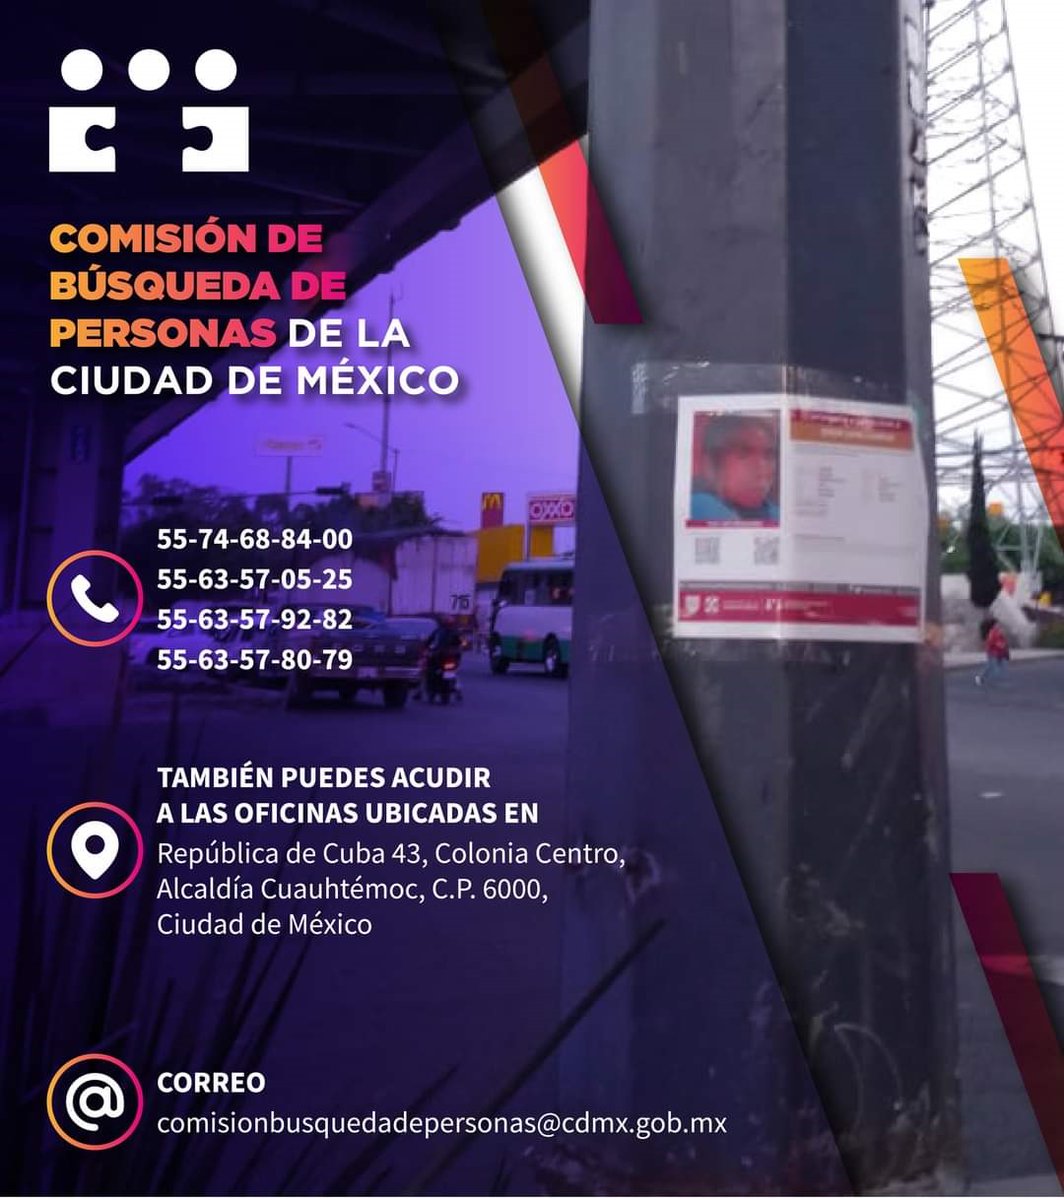 Acércate a @busqueda_cdmx para solicitar orientación y apoyo en caso de reportar personas desaparecidas. #BúsquedaCDMX